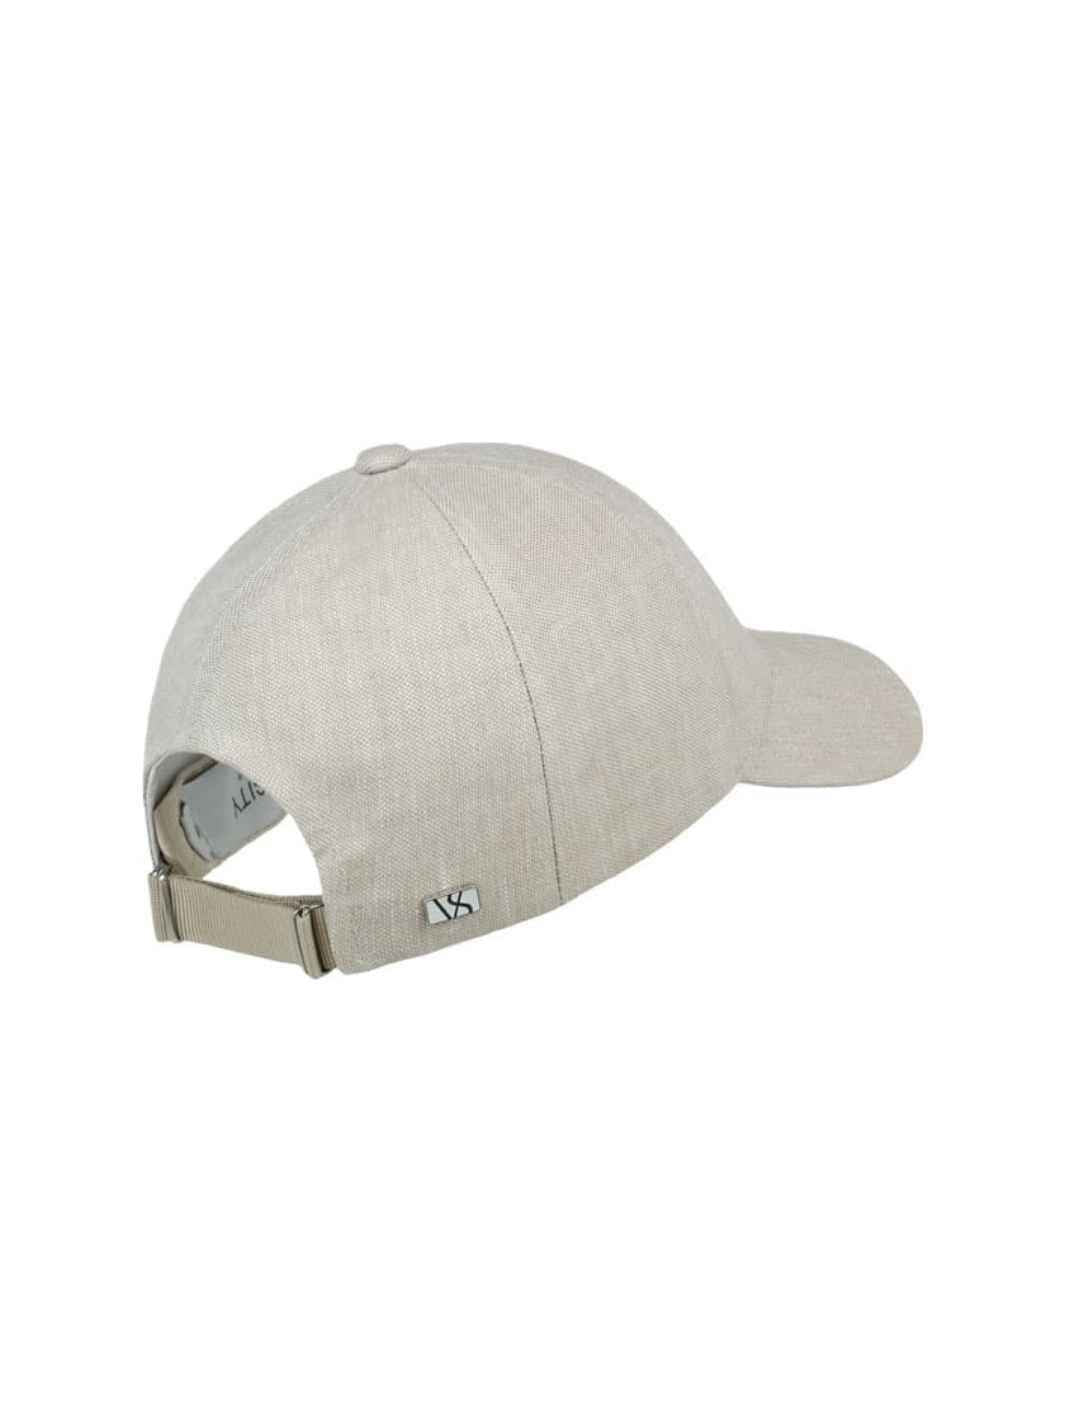 Varsity Headwear Accessories Cap | Hampton Beige Linen